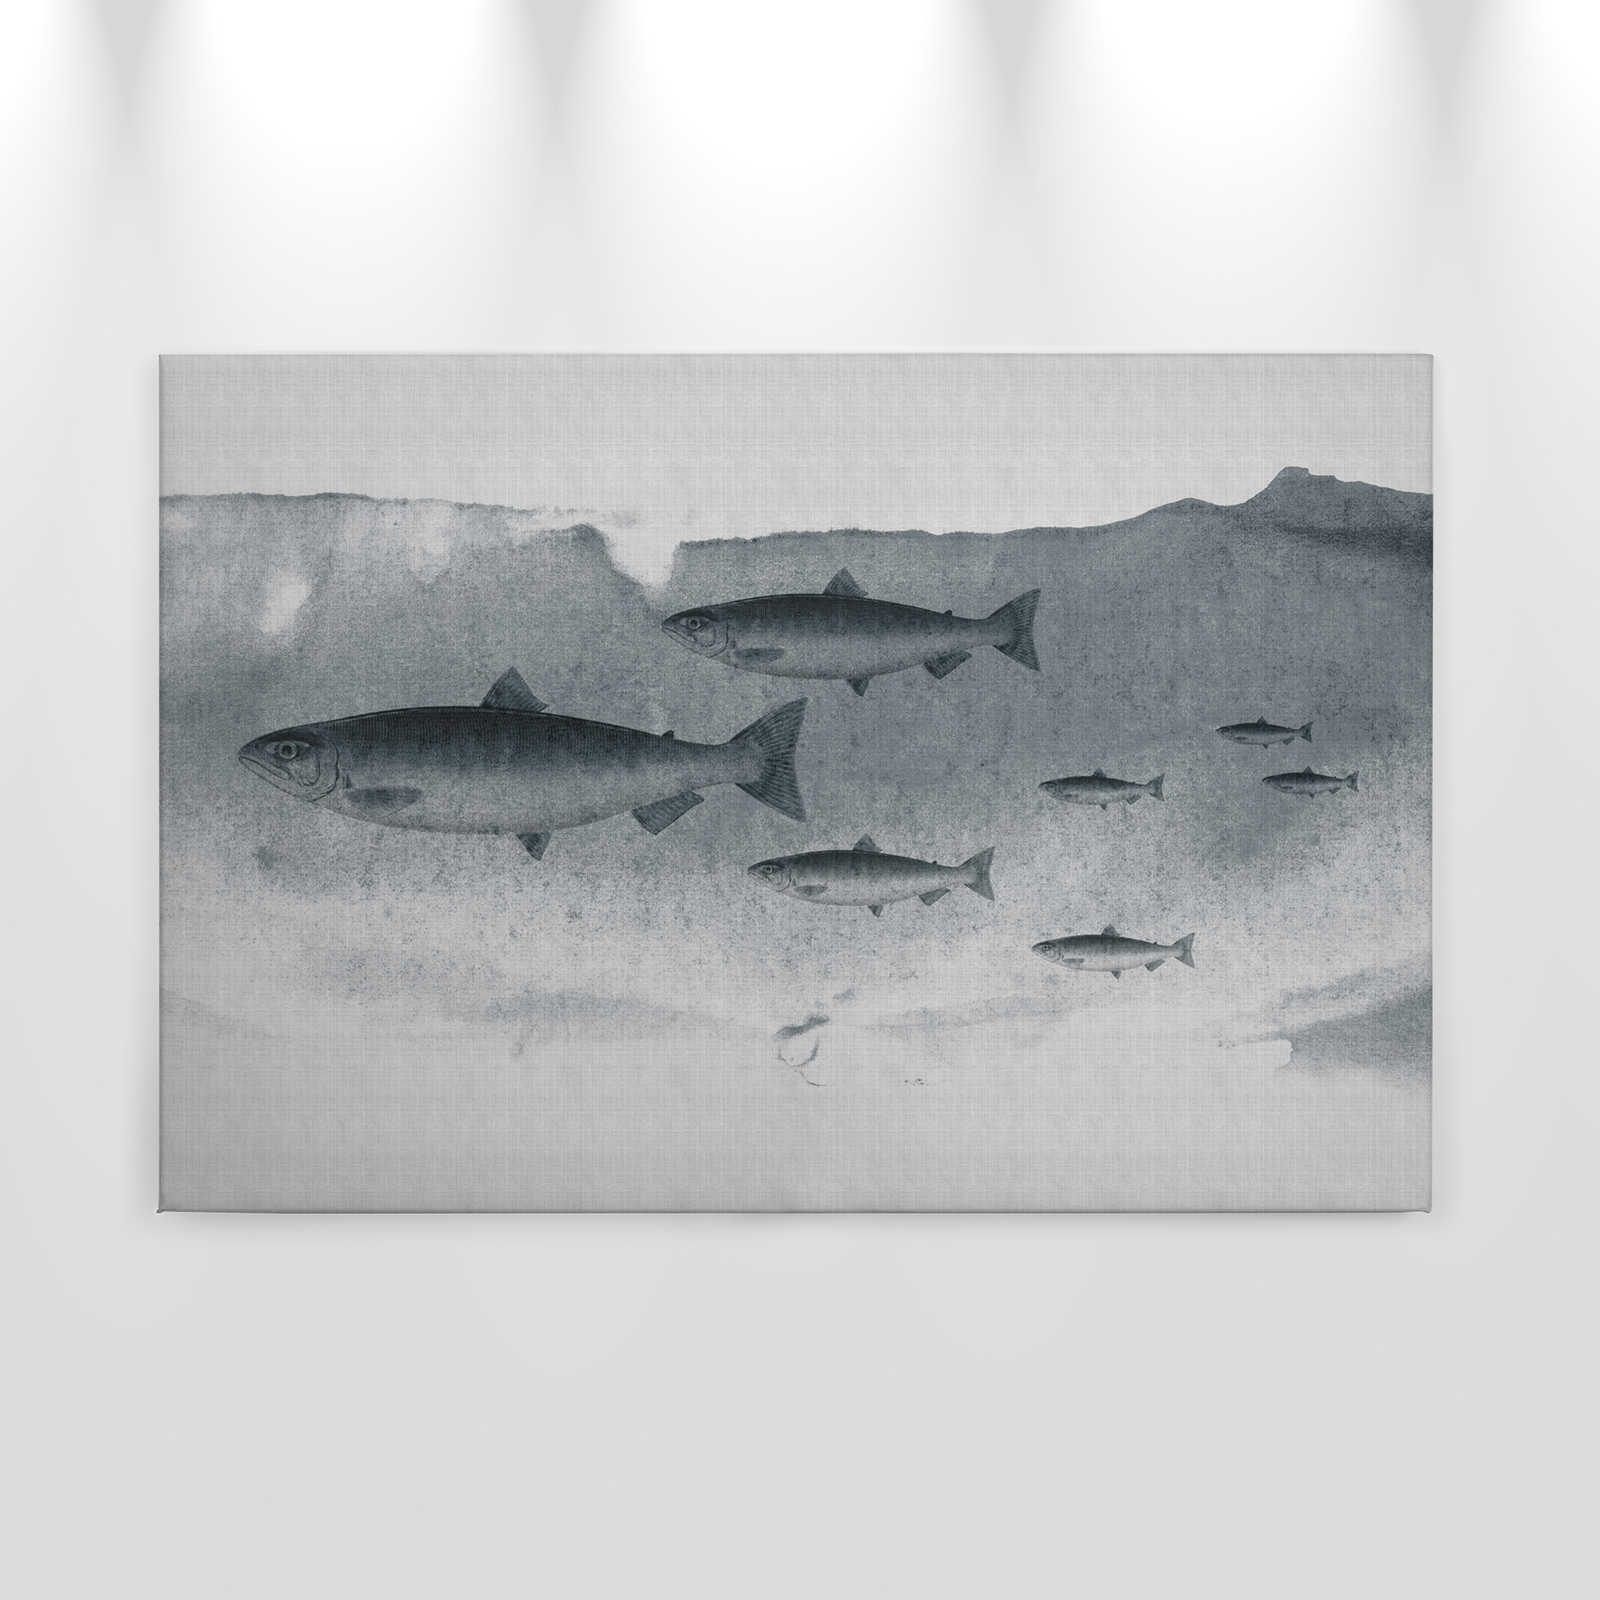             Into the blue 3 - Aquarelle de poisson en gris comme toile de lin structure naturelle - 0,90 m x 0,60 m
        